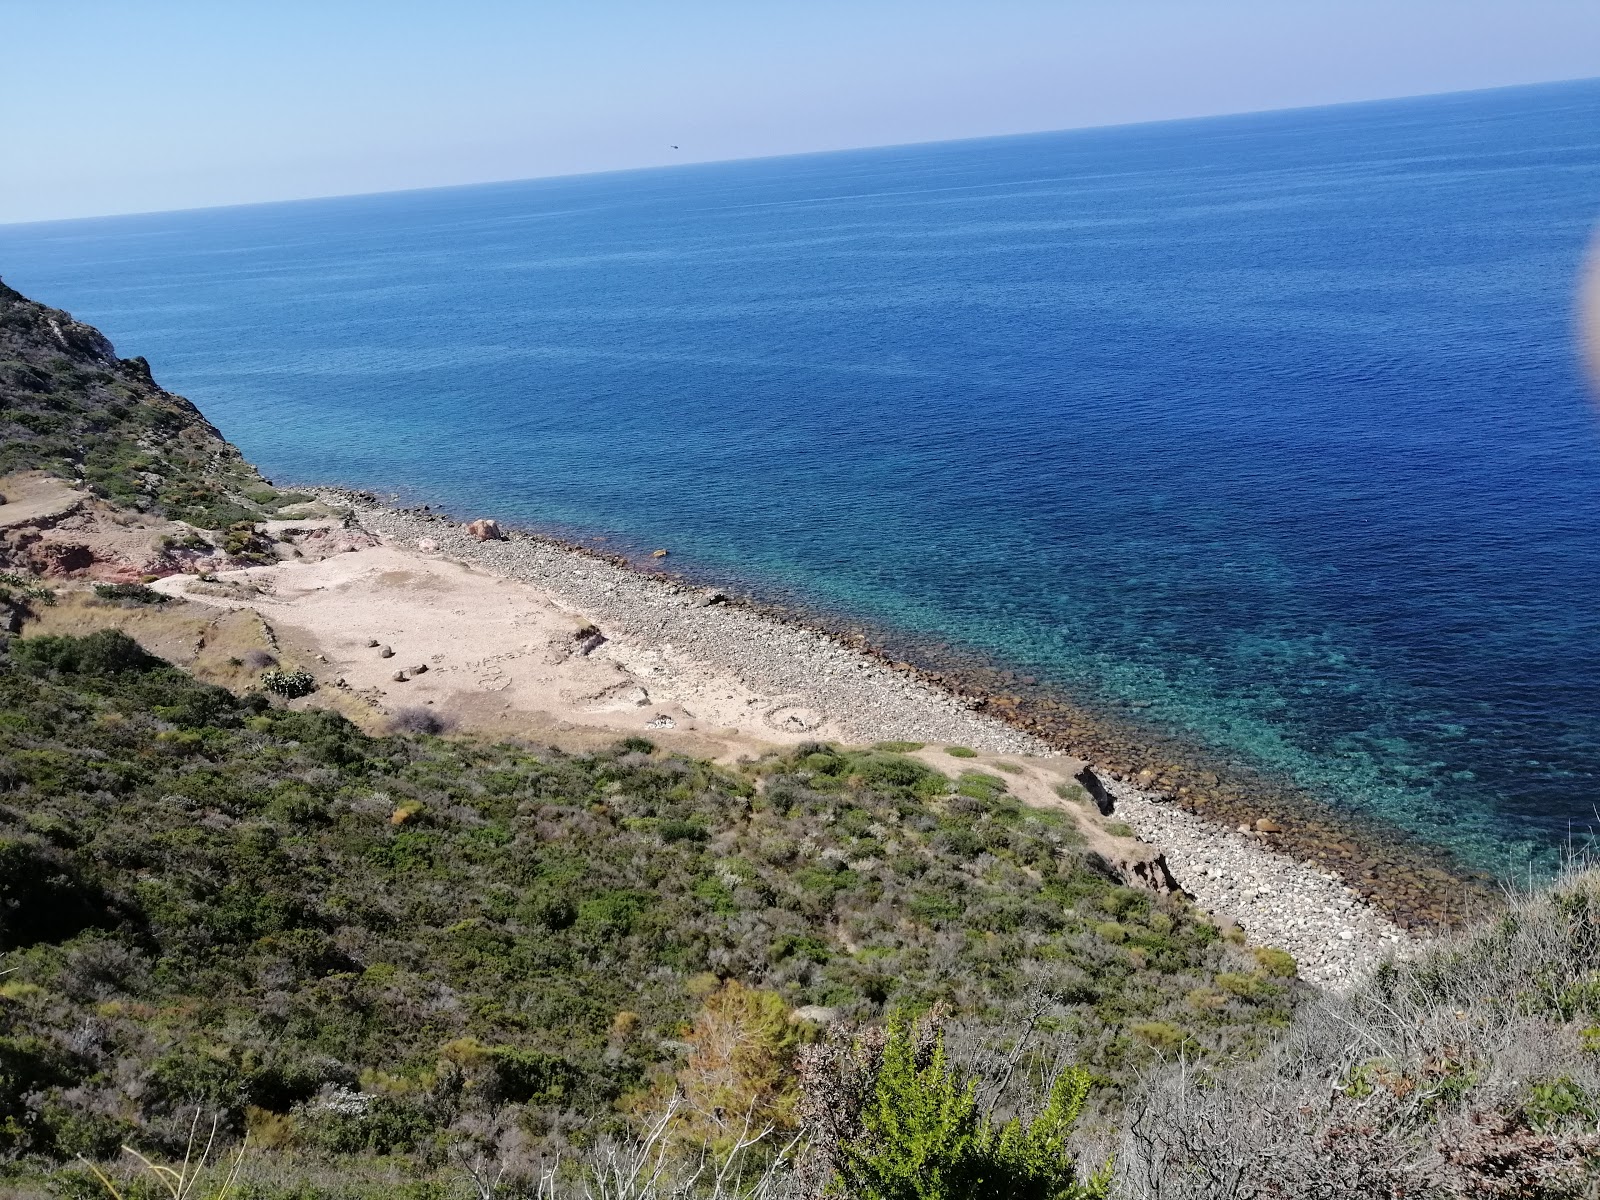 Foto av Spiaggia della Calcara med stenar yta